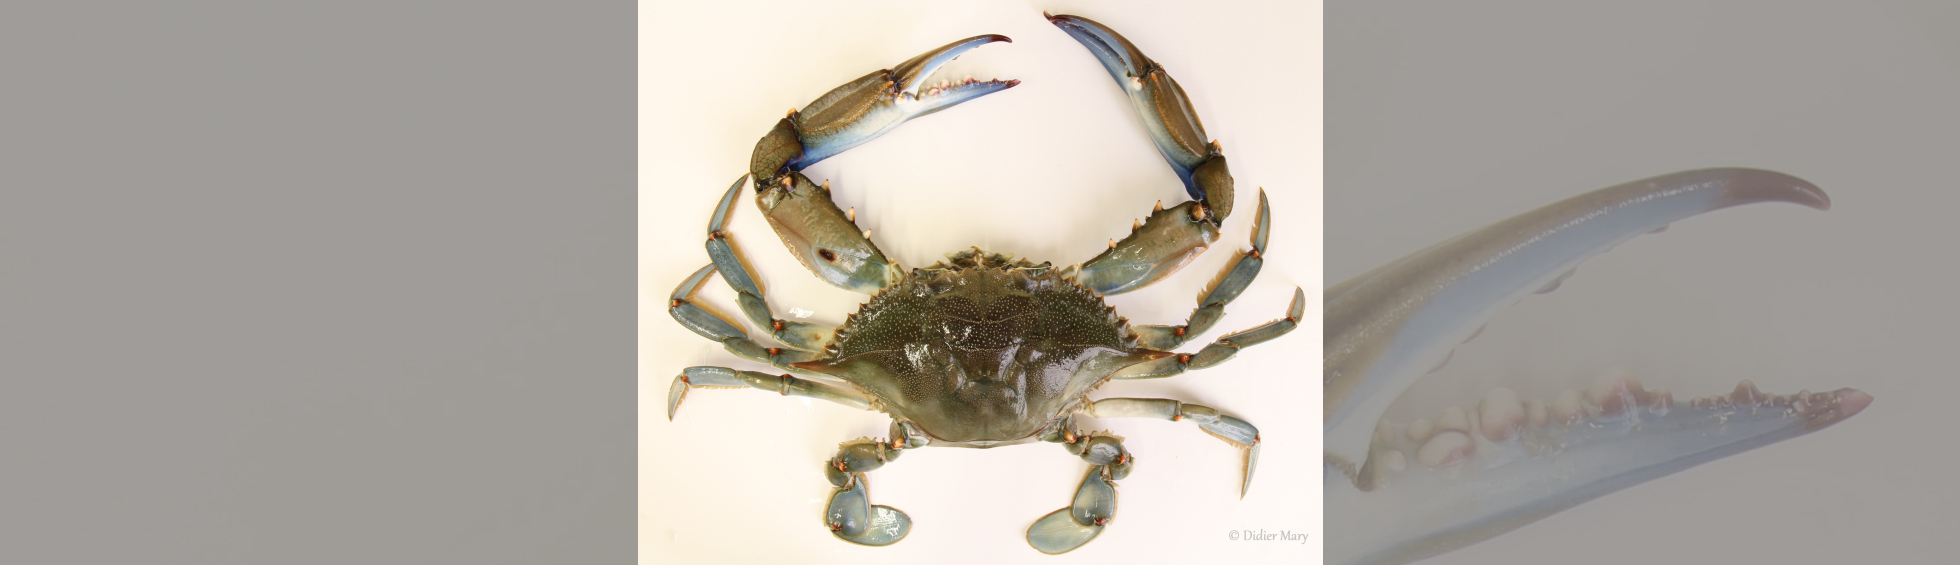 Photo couleur du Crabe bleu américain - Muséum d'histoire naturelle